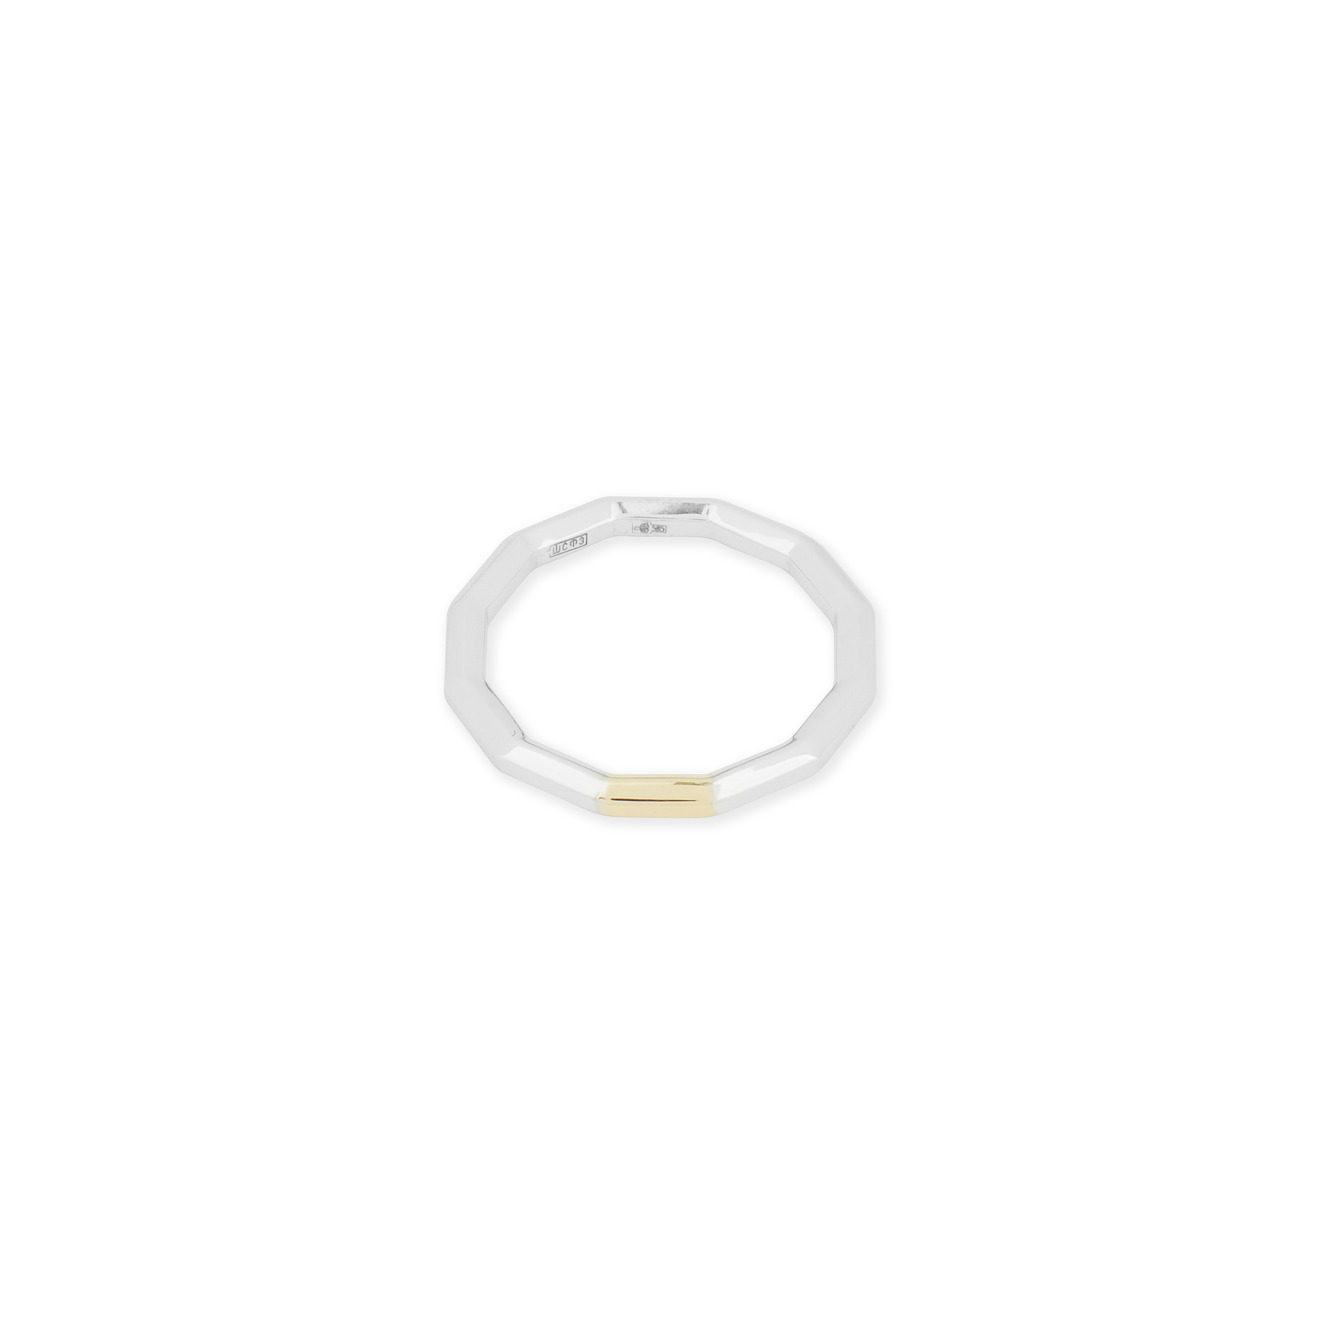 Avgvst Обручальное кольцо из золота Double Gold с сегментом из лимонного золота avgvst моносерьга кость из золота сквозь ухо